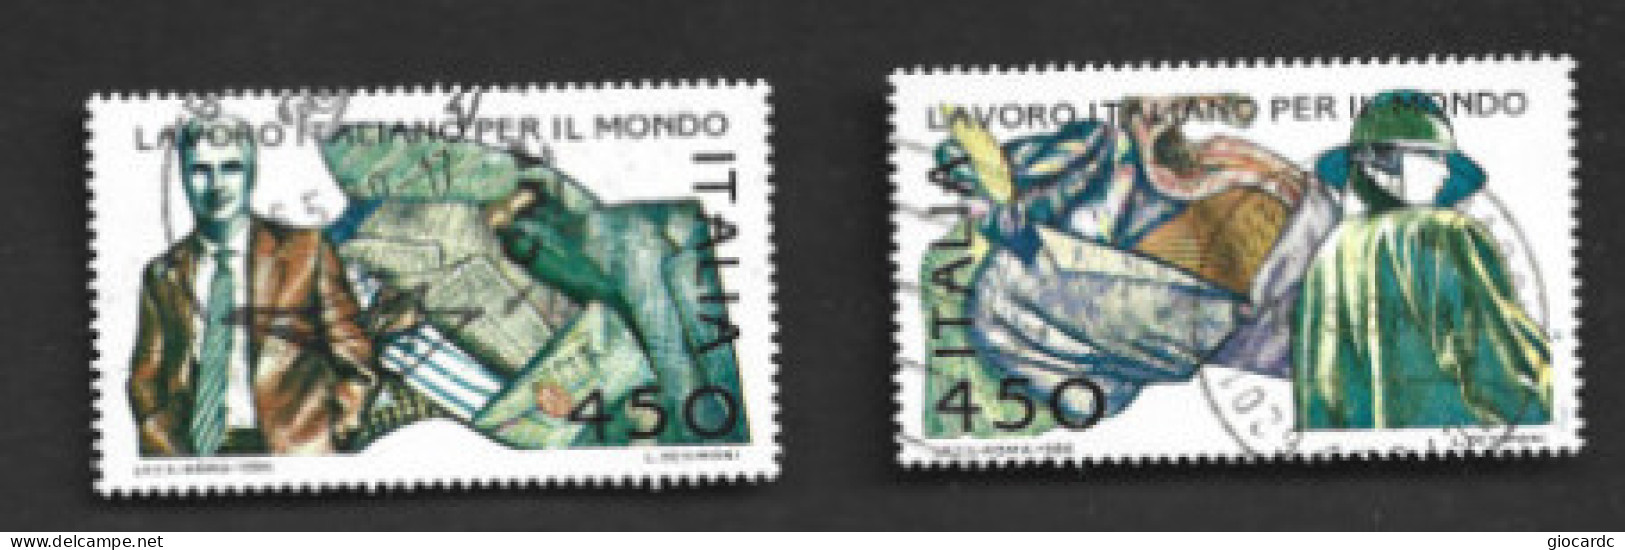 ITALIA REPUBBLICA  - SA 1776.1767  - 1986  LAVORO ITALIANO: MODA  (COMPLET SET OF 2)  -  USATO  -  RIF. 30813 - 1981-90: Gebraucht